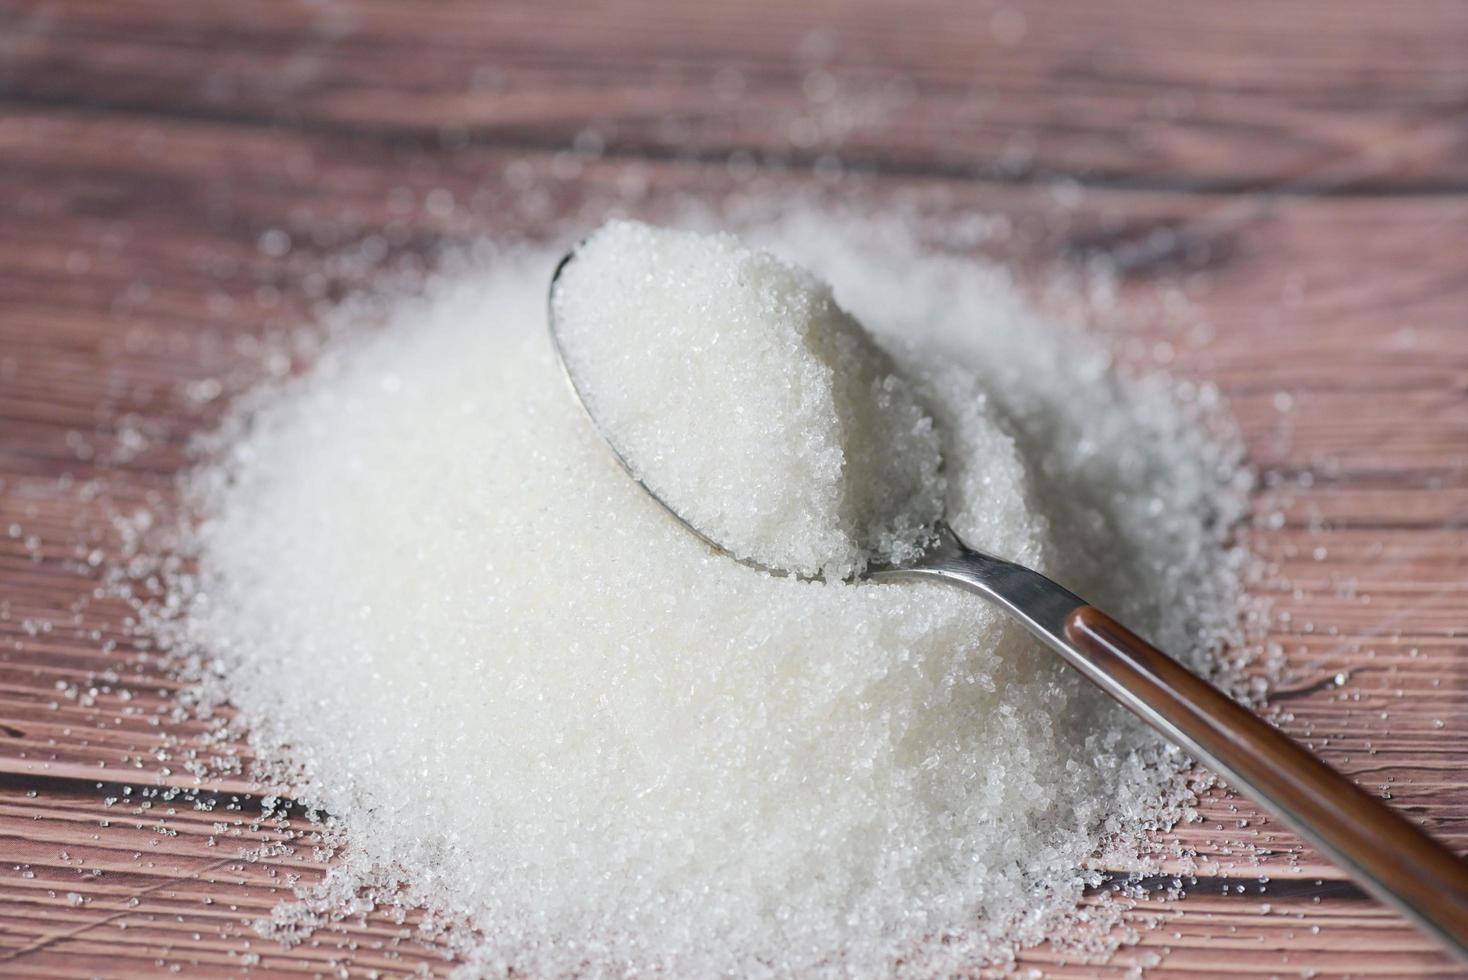 socker på sked och trä- bakgrund, vit socker för mat och sötsaker efterrätt godis högen av ljuv socker kristallin granulerad foto